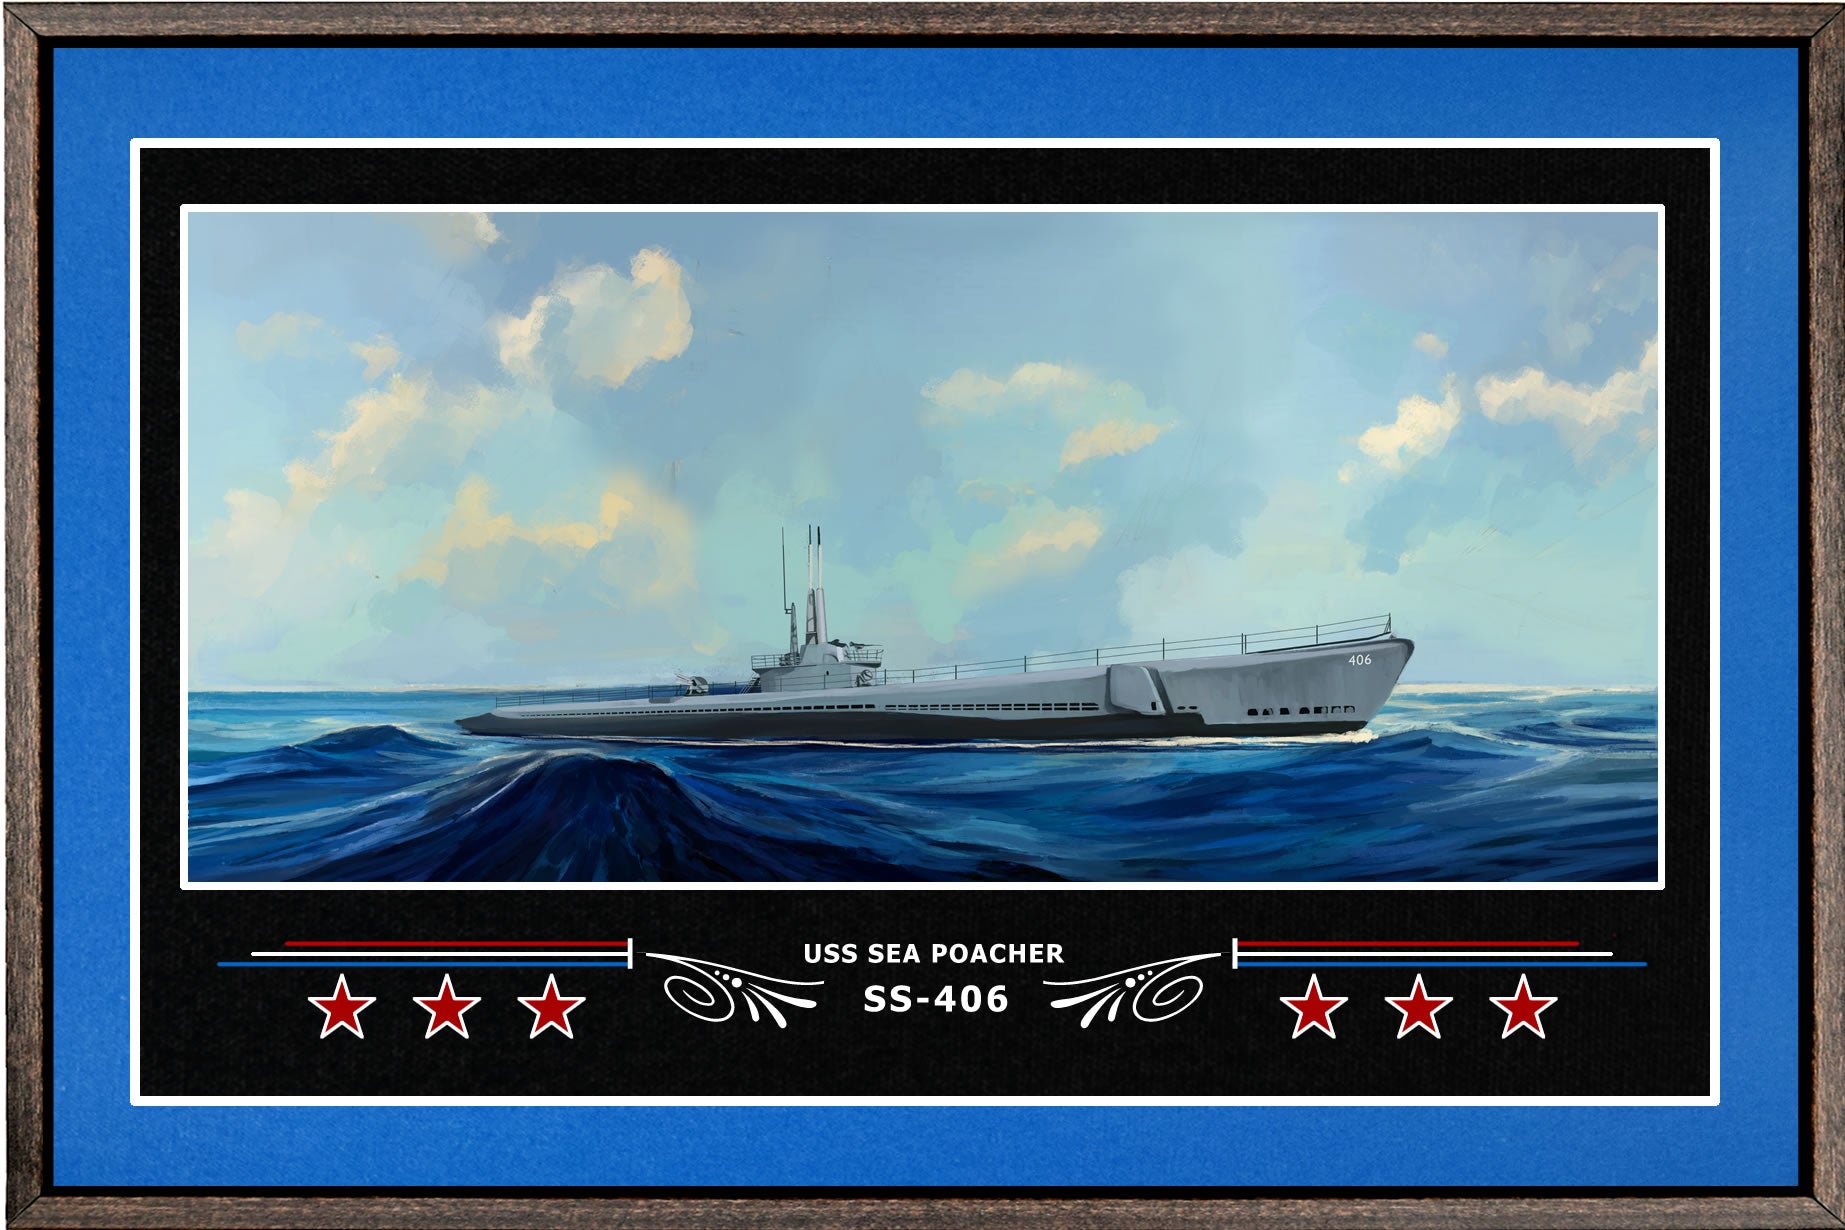 USS SEA POACHER SS 406 BOX FRAMED CANVAS ART BLUE